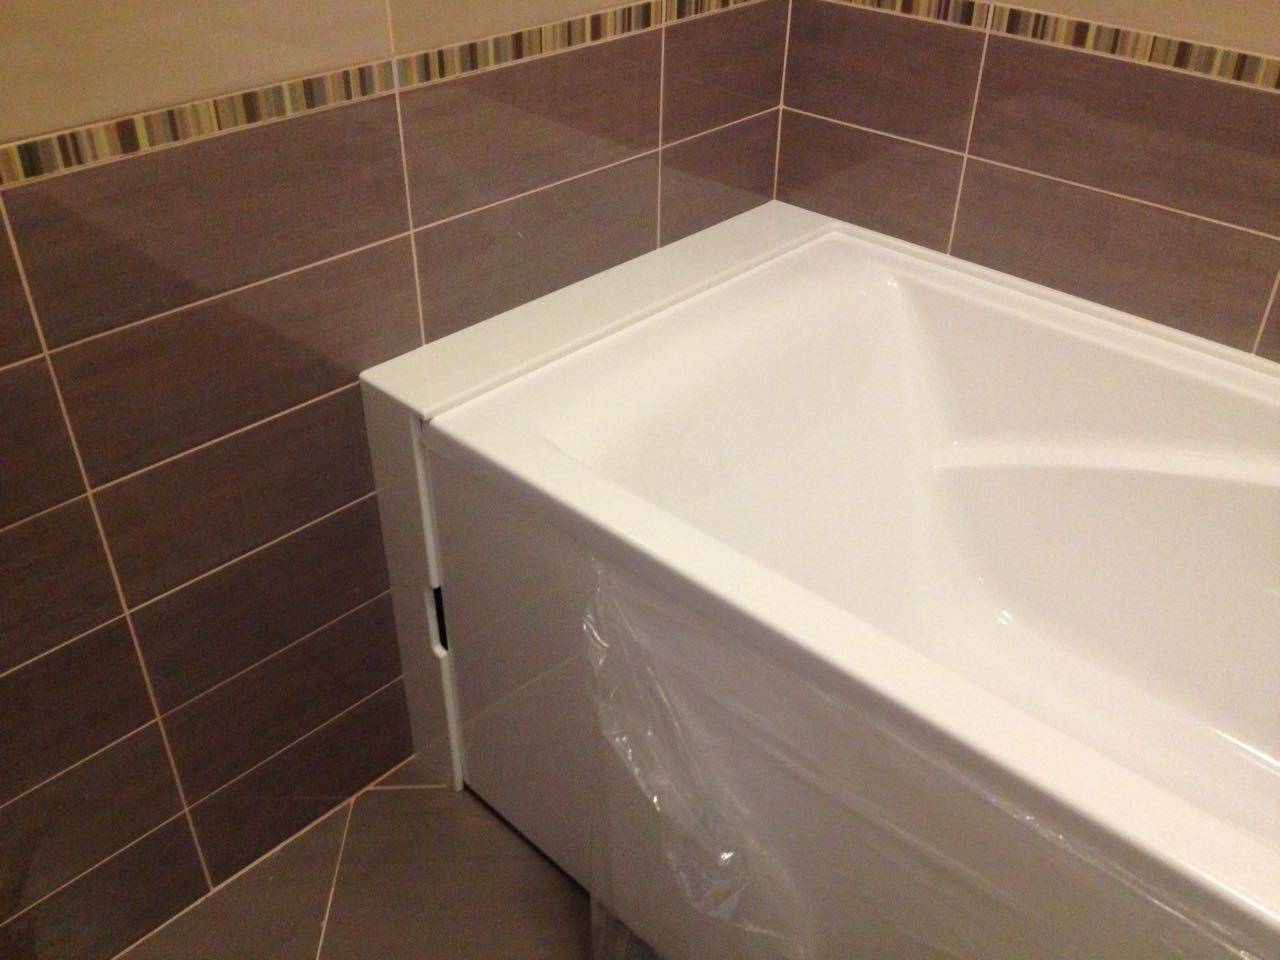 Как избавиться от щели между ванной и стеной: самые эффективные и проверенные способы